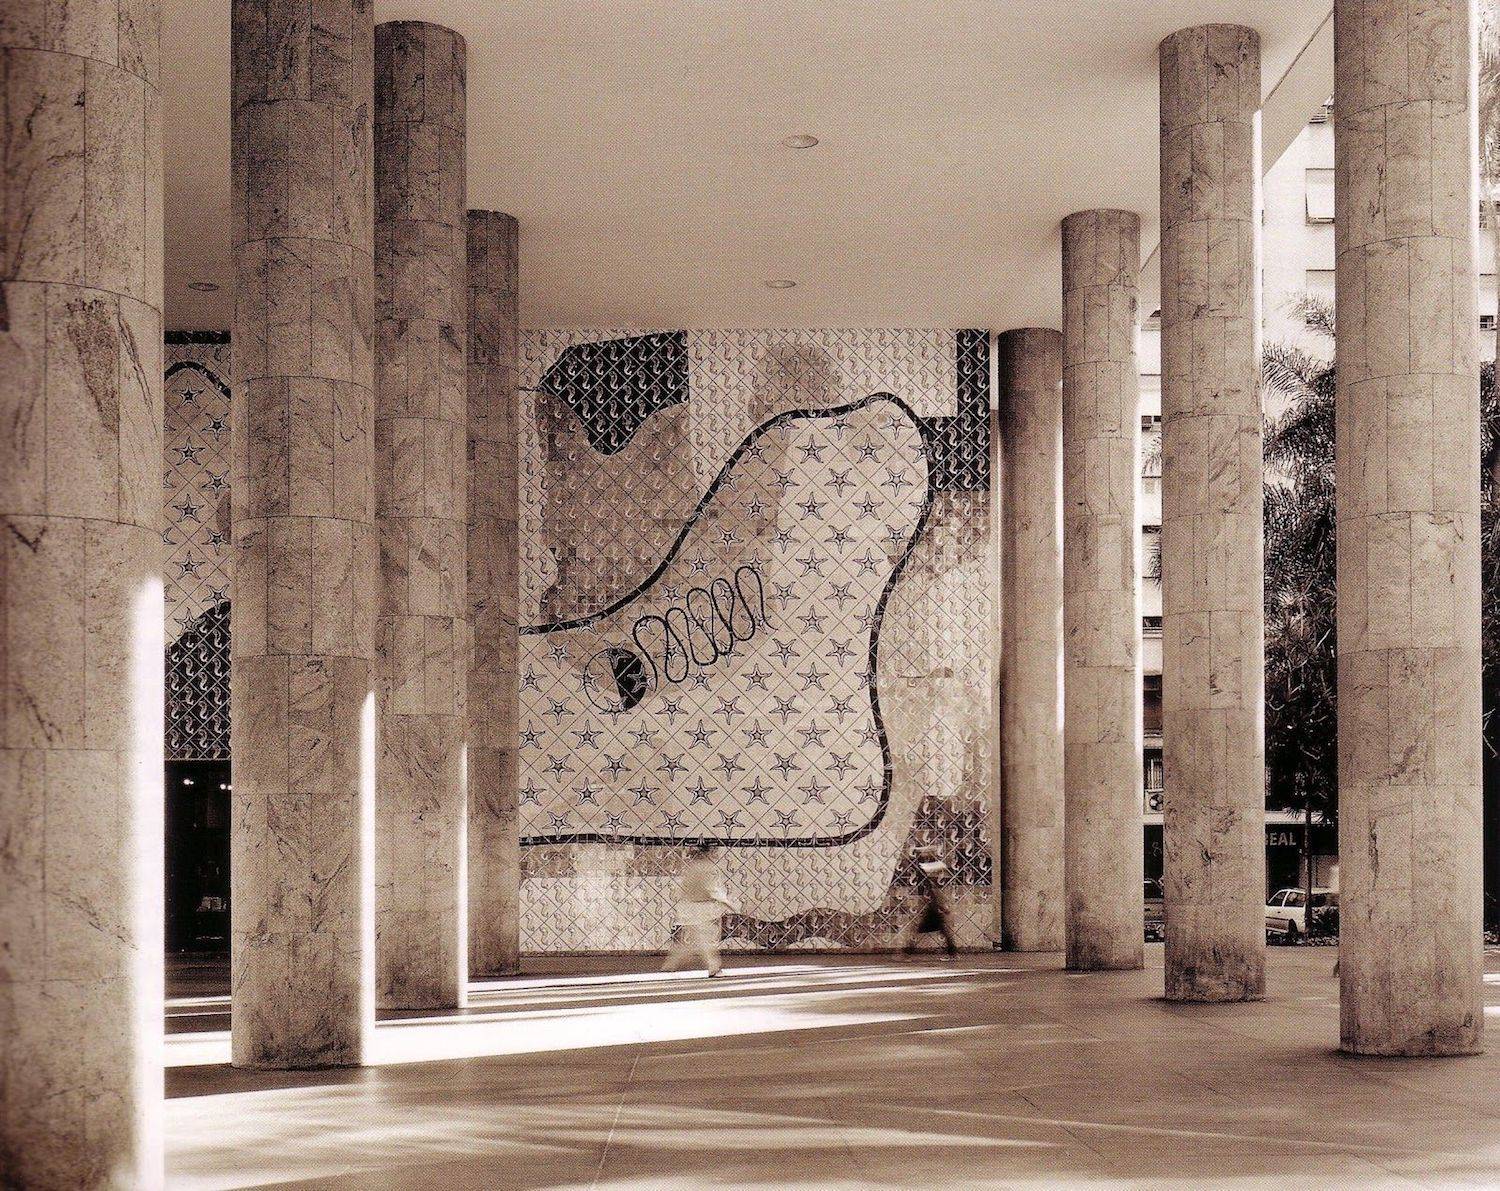 El Ministerio de Educación y Salud, de Lucio Costa, se diseñó en 1945. Le Corbusier fue consultor de esta obra en Río de Janeiro. 